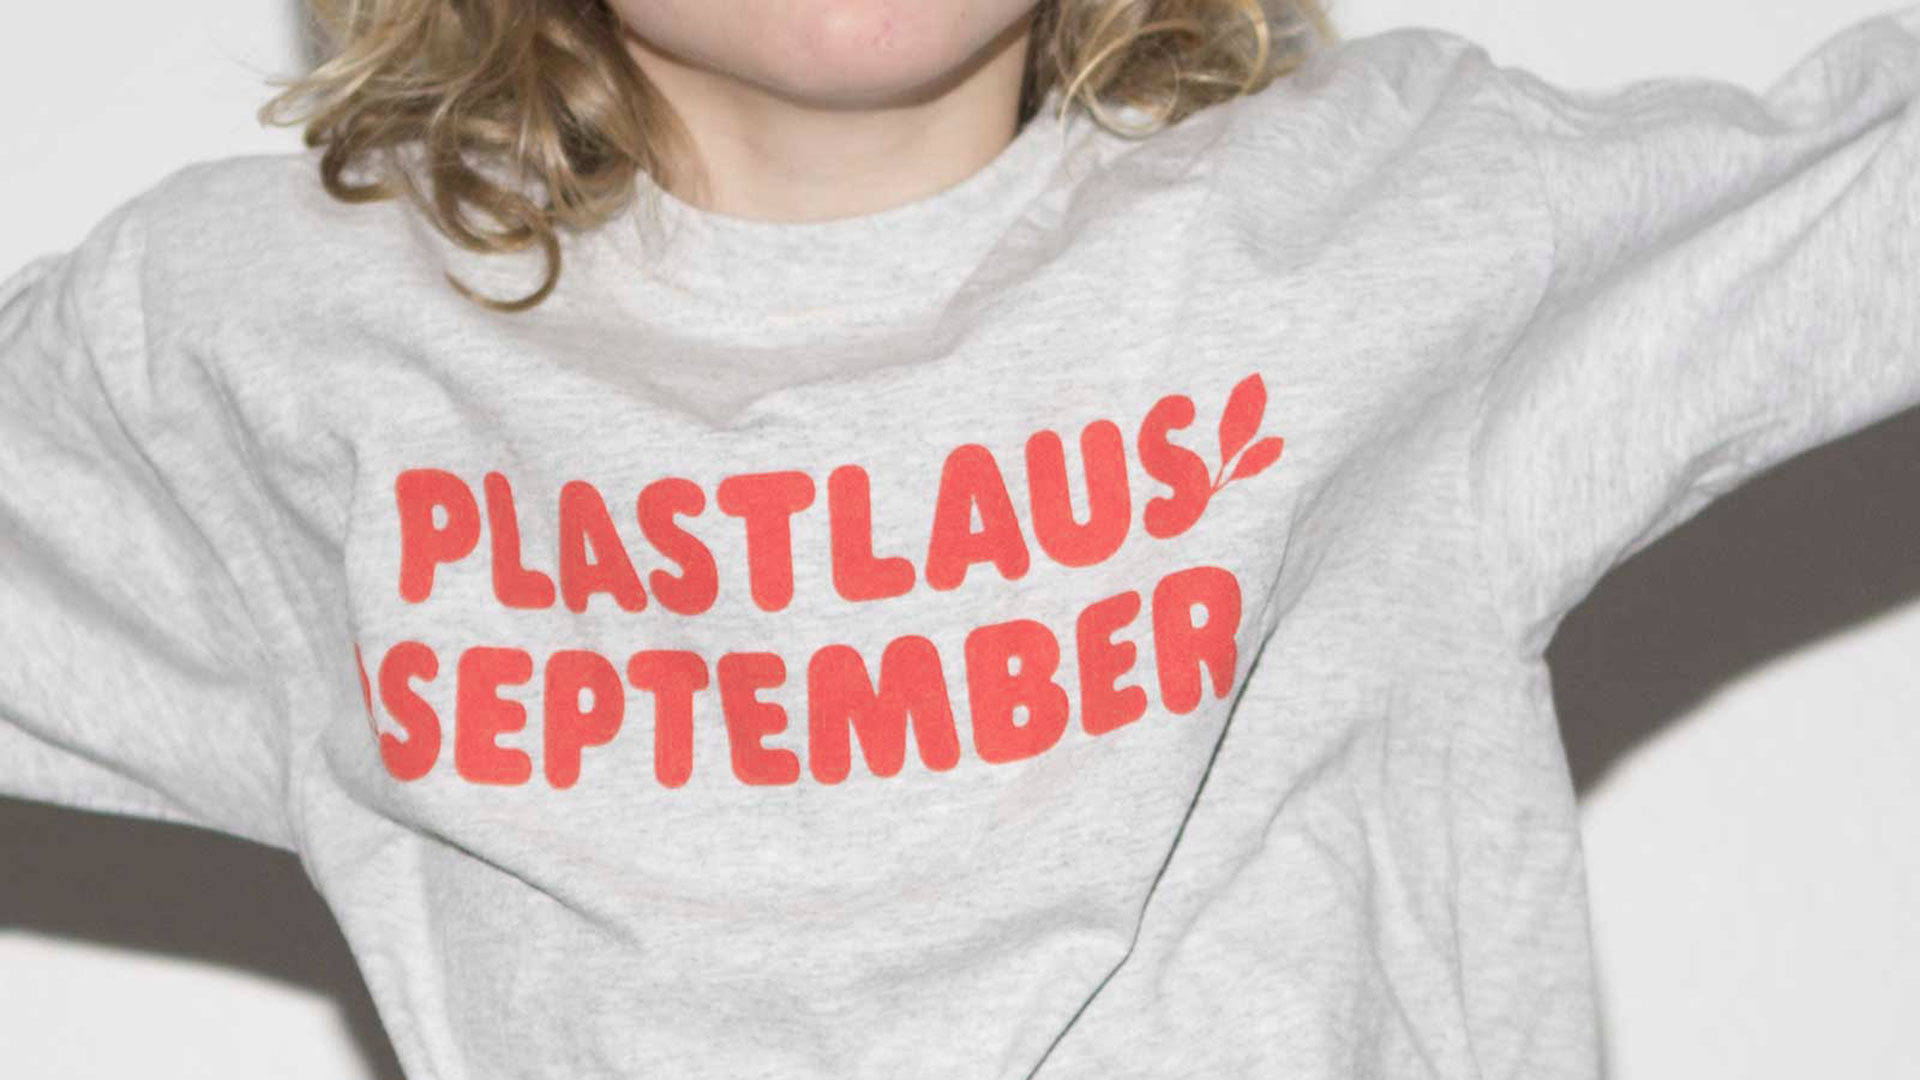 Plastlaus september